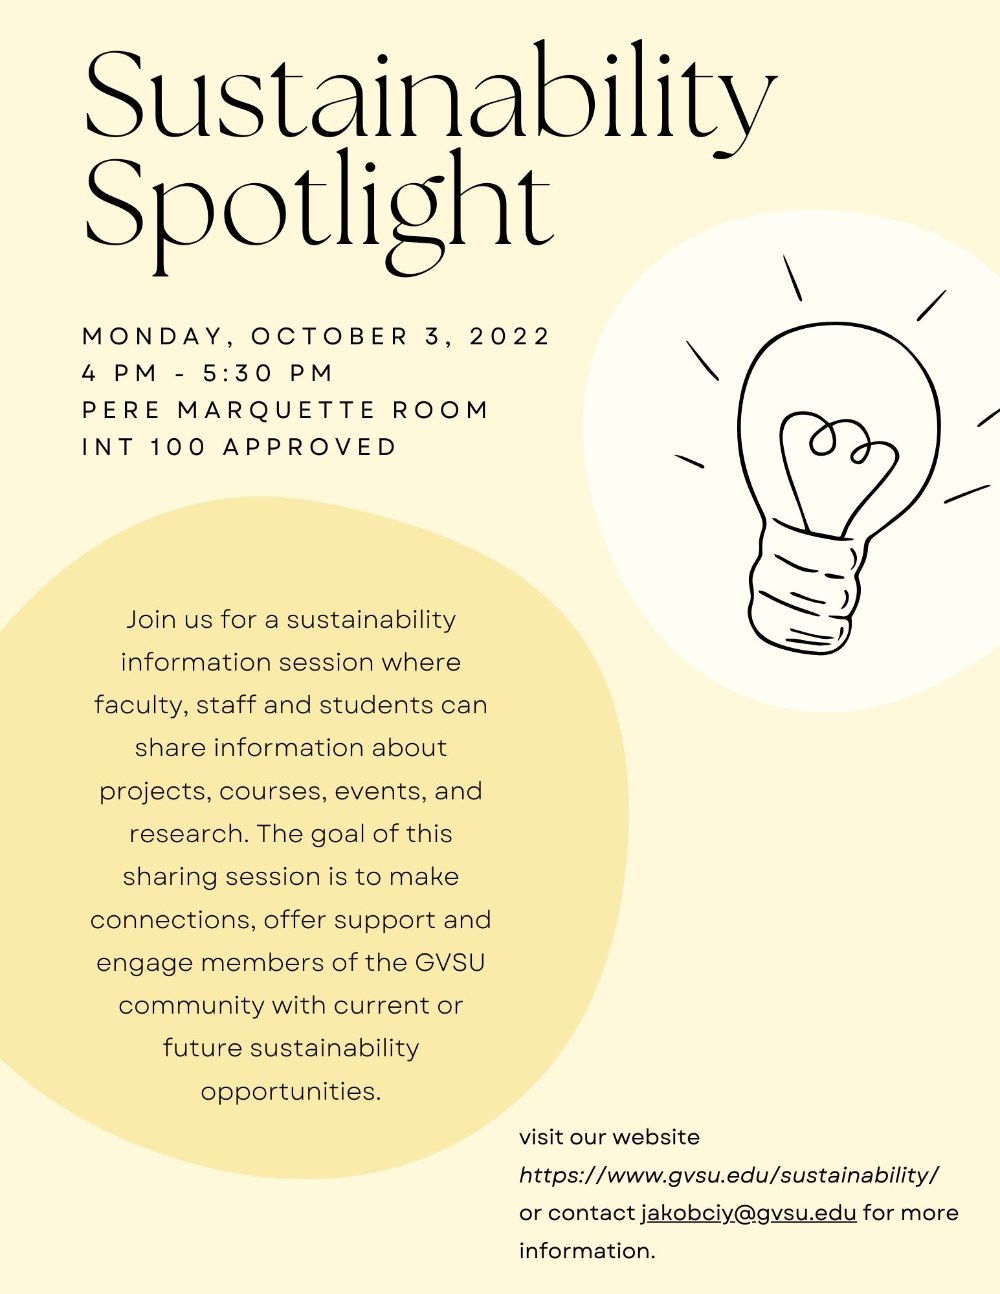 Sustainability Spotlight Flyer